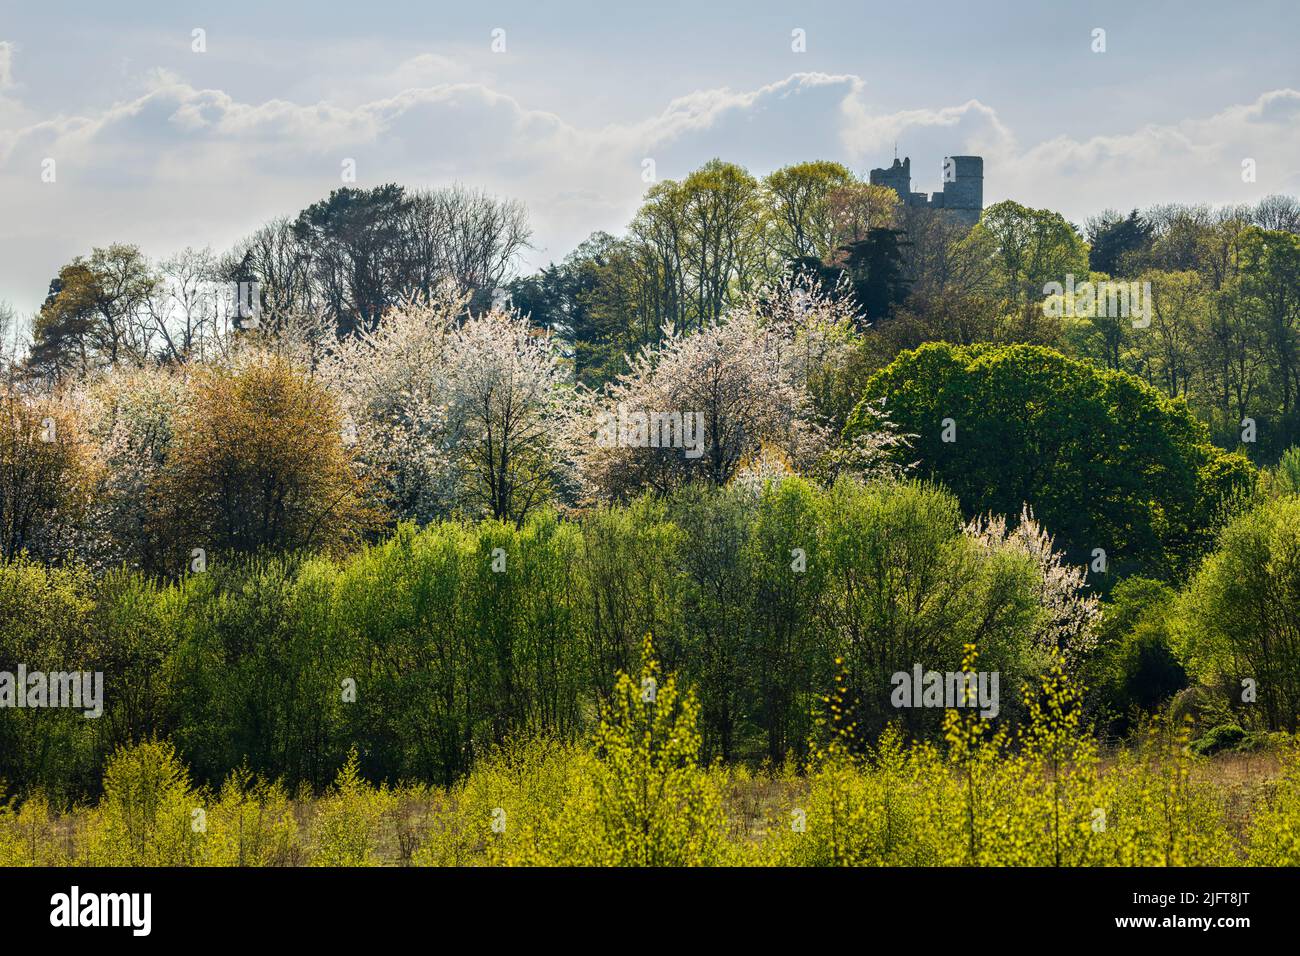 Tourelles du château de Donnington au-dessus de la fleur de printemps rétro-éclairée, Newbury, West Berkshire, Angleterre, Royaume-Uni, Europe Banque D'Images